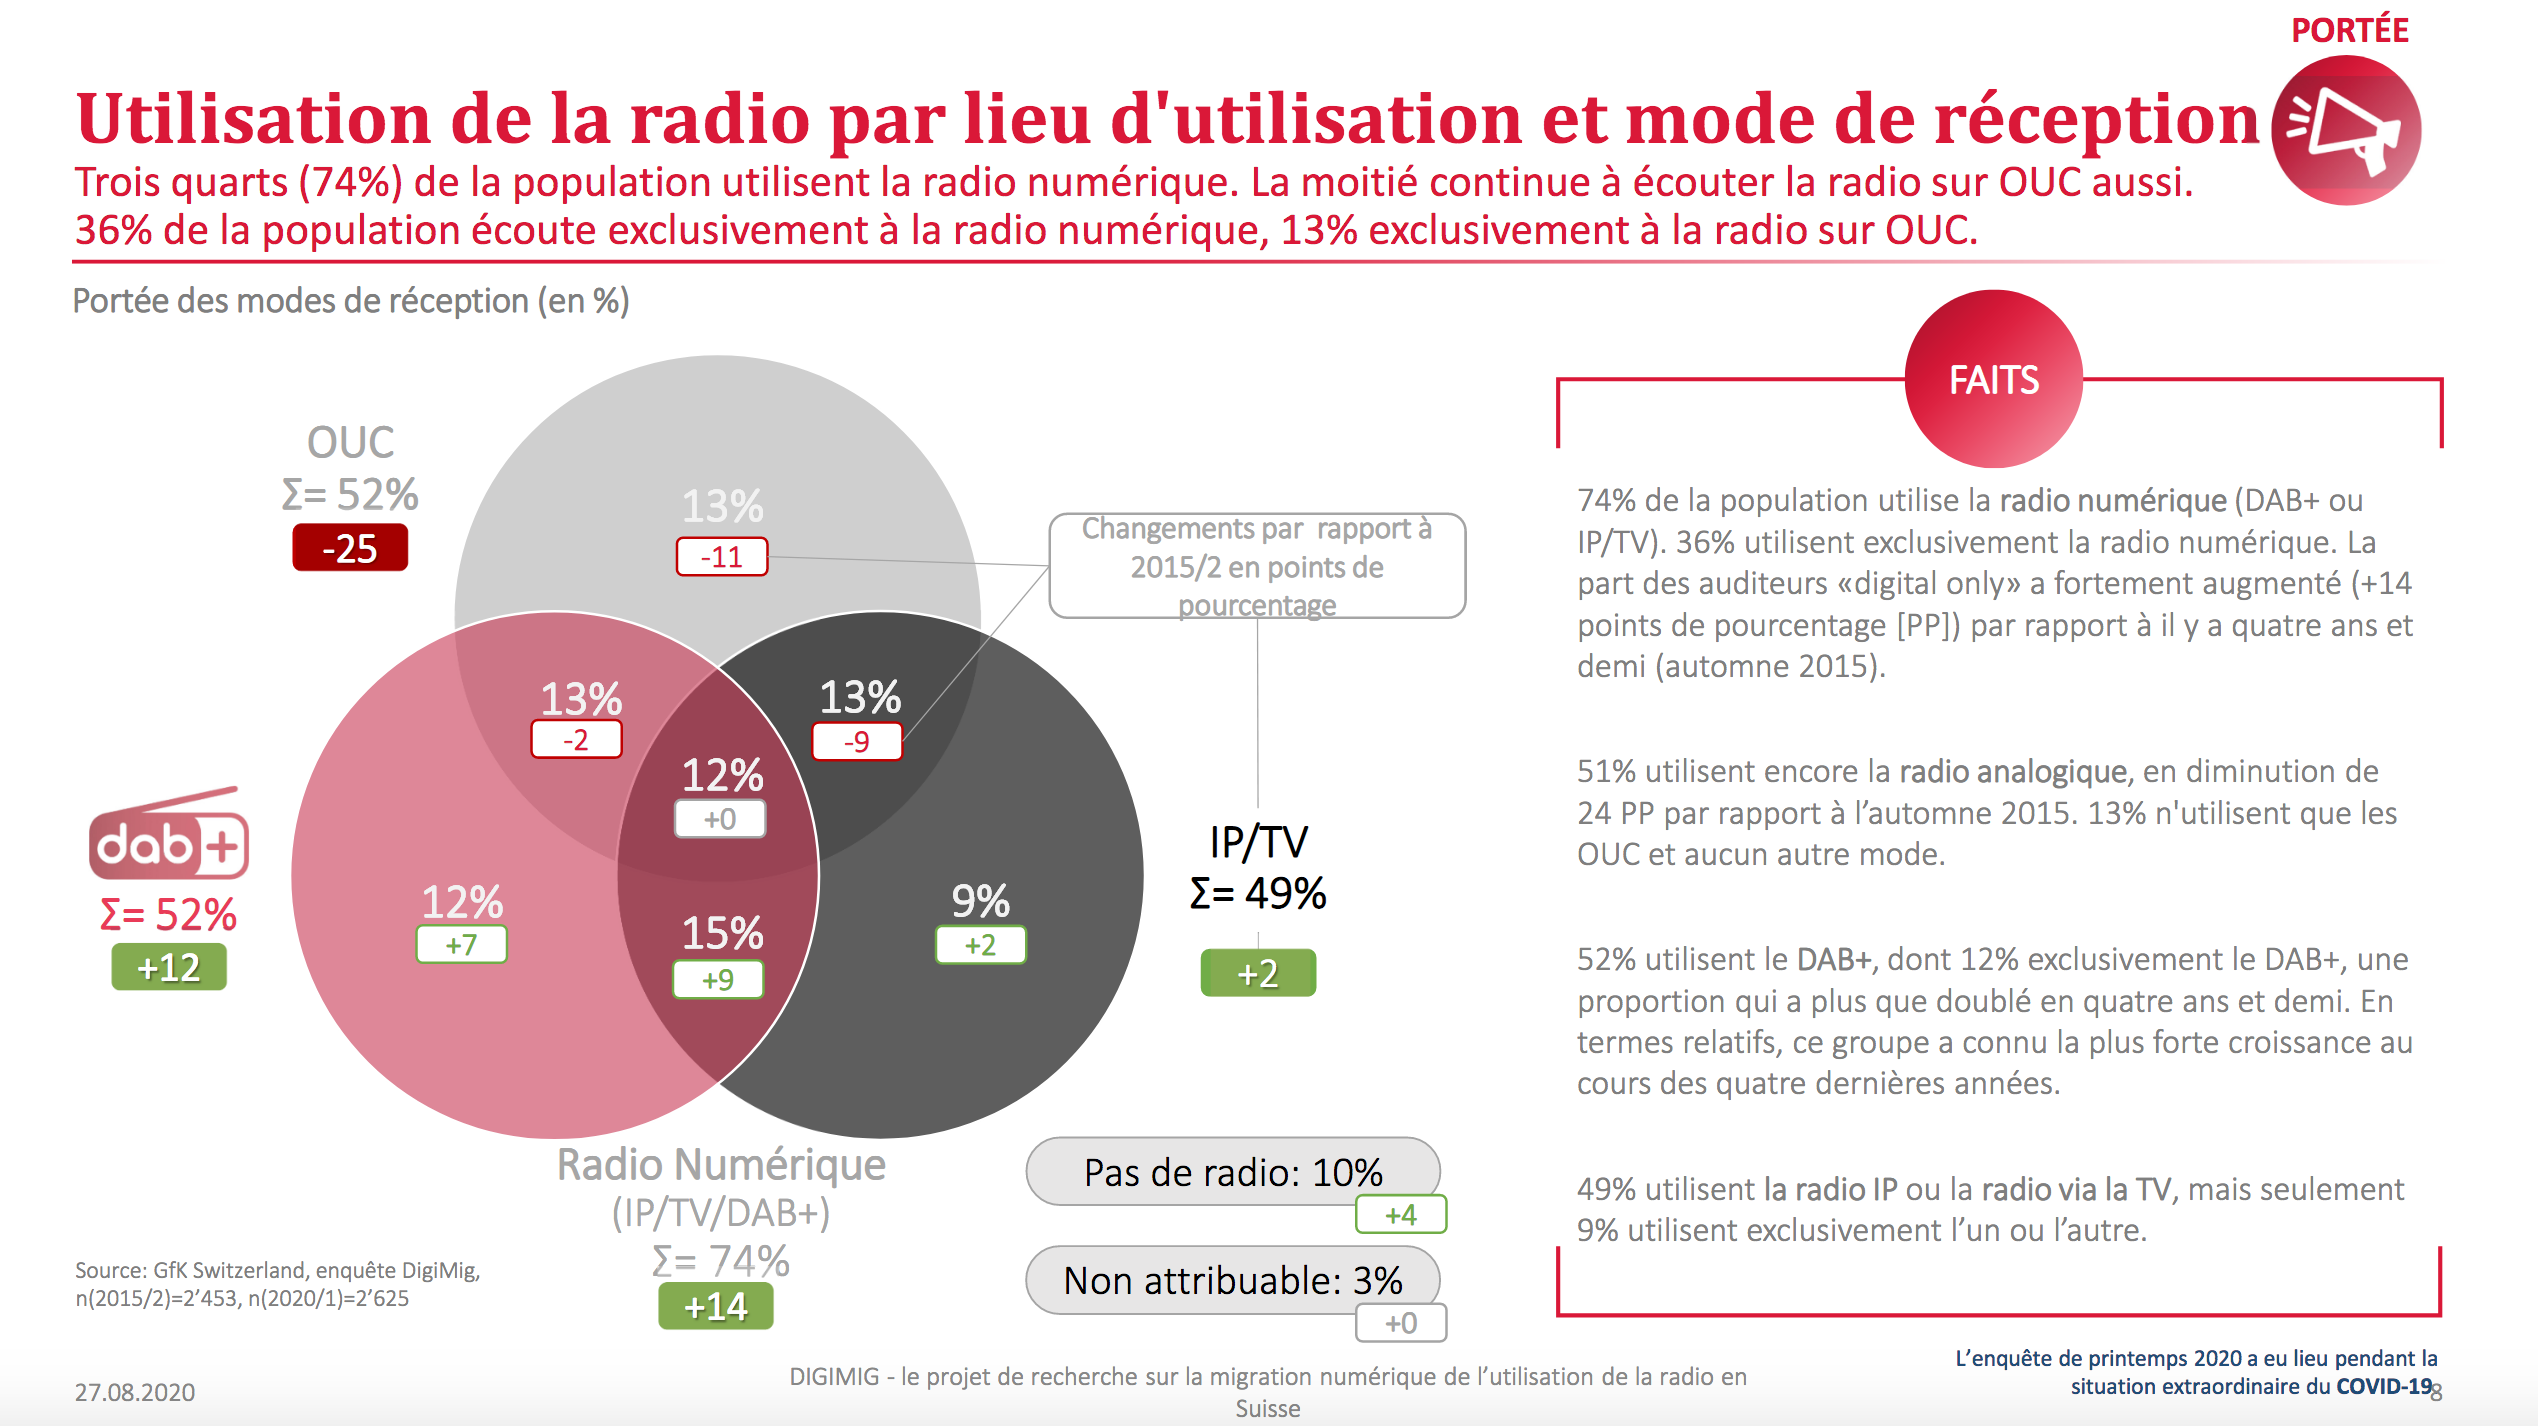 La Suisse écoute de plus en plus la radio numérique